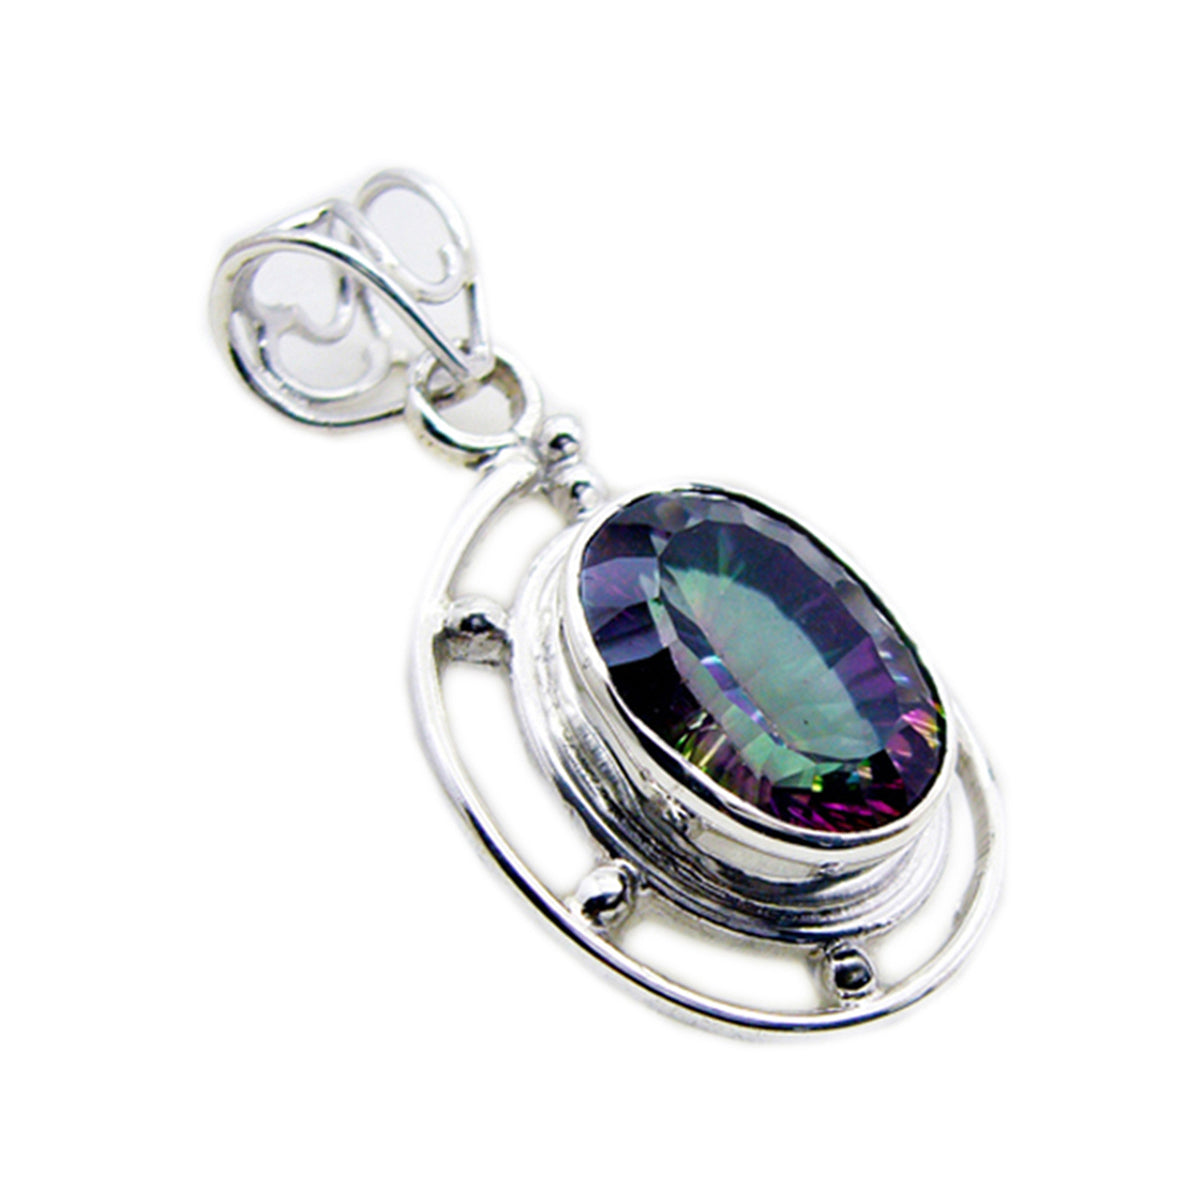 Riyo magnifique pierre précieuse ovale à facettes multicolore quartz mystique pendentif en argent sterling cadeau pour ami